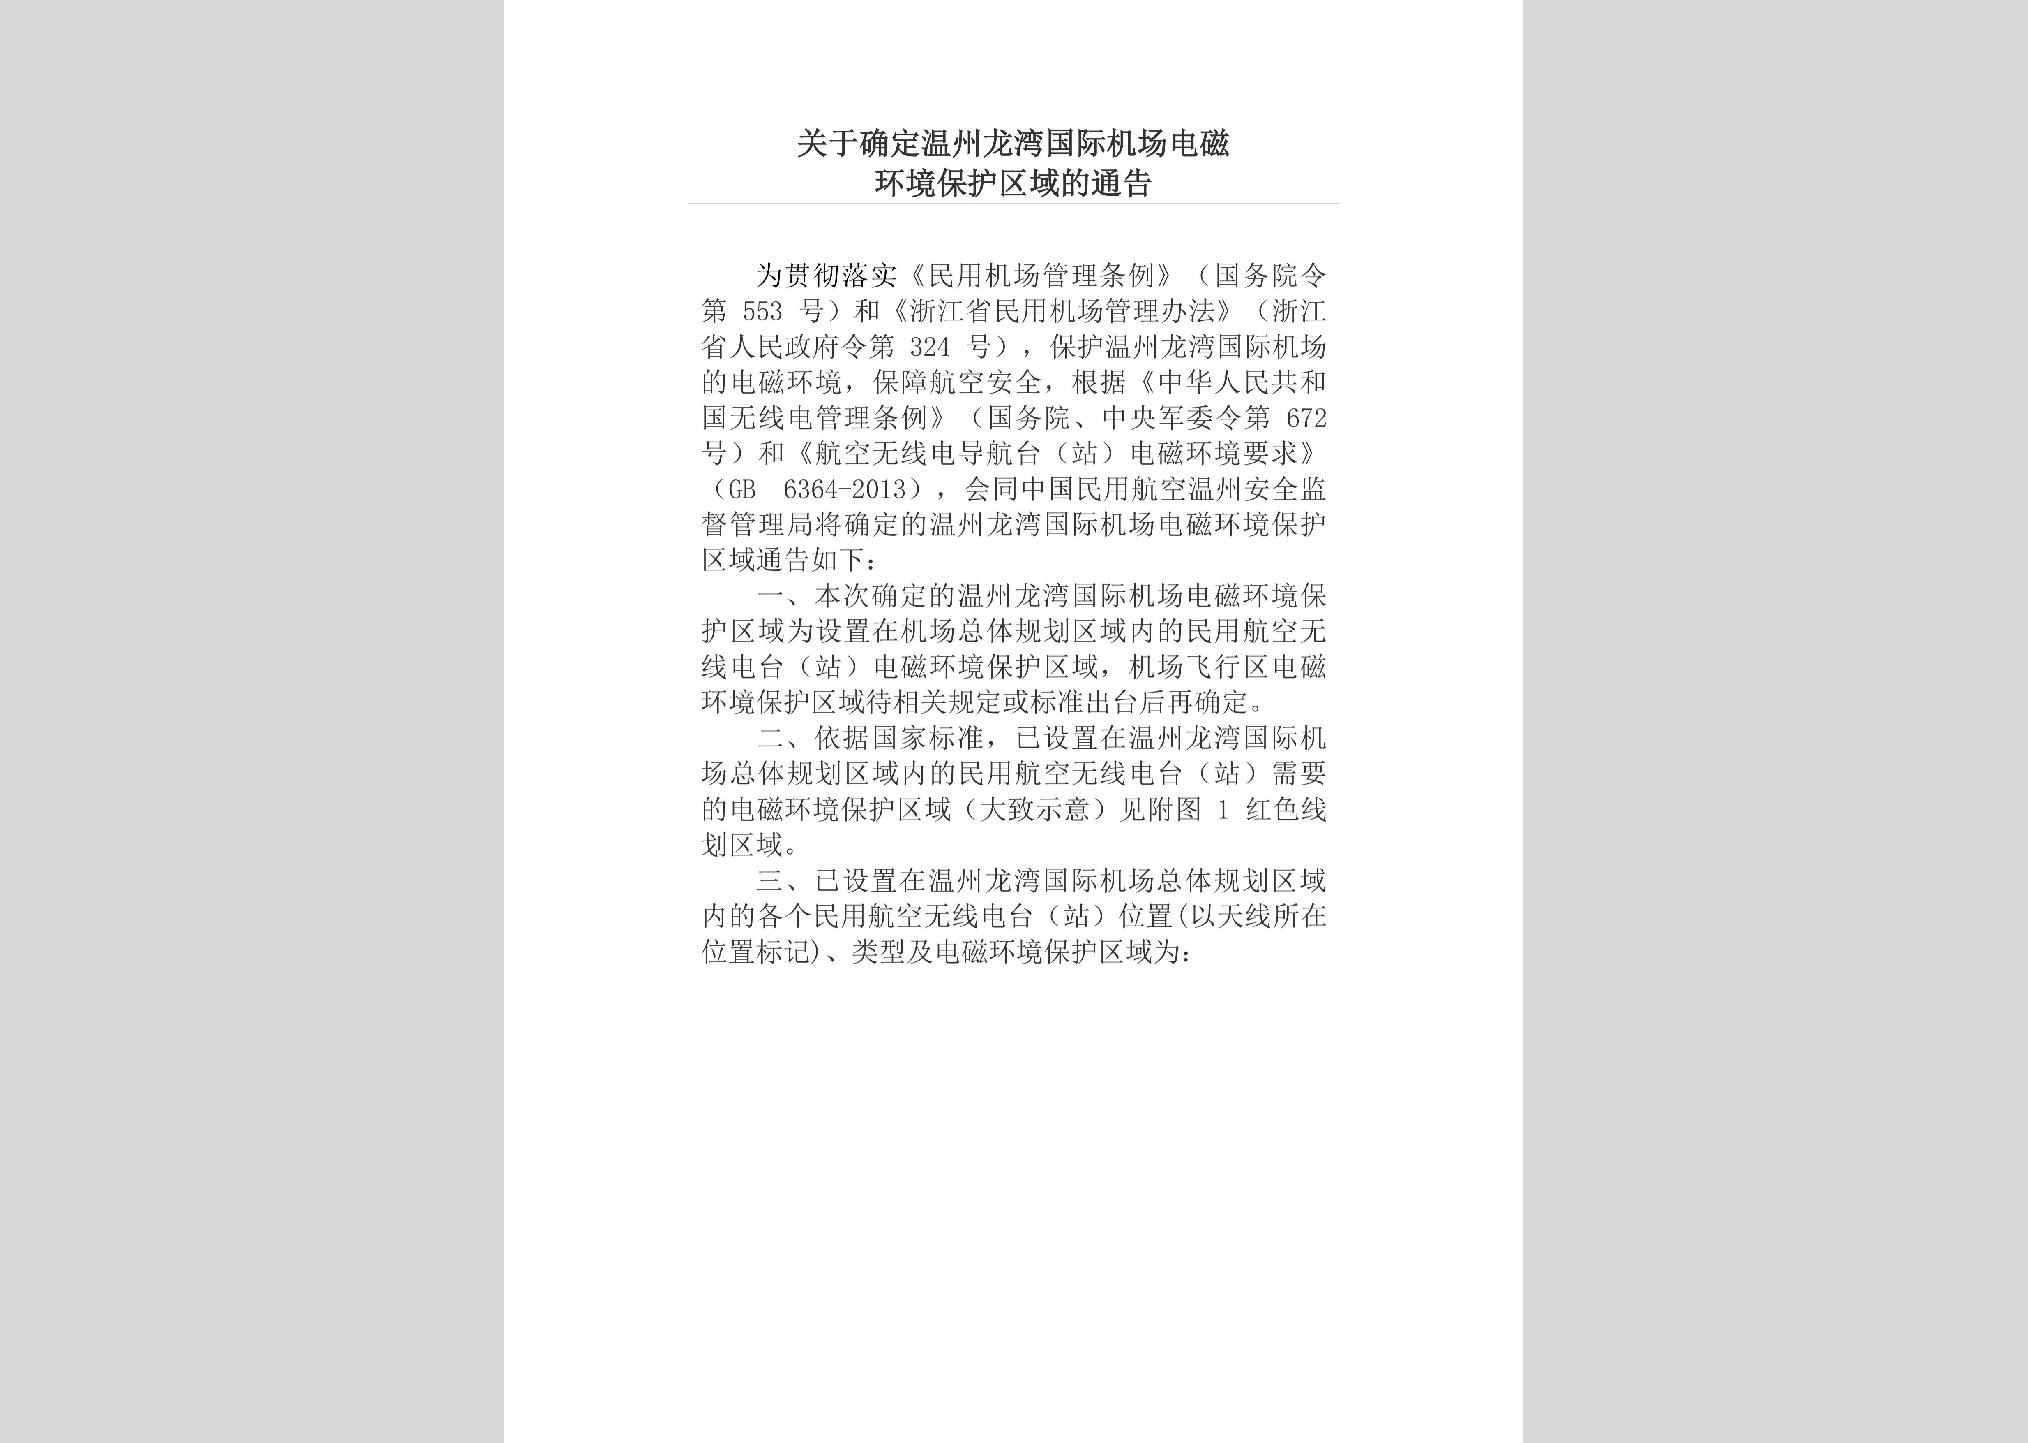 ZJ-JCDCHJBH-2018：关于确定温州龙湾国际机场电磁环境保护区域的通告